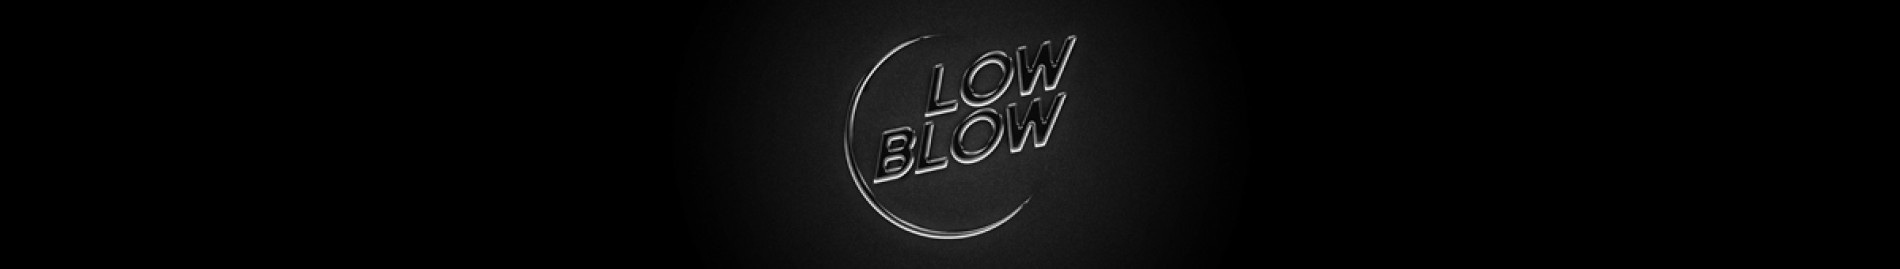 Lowblow